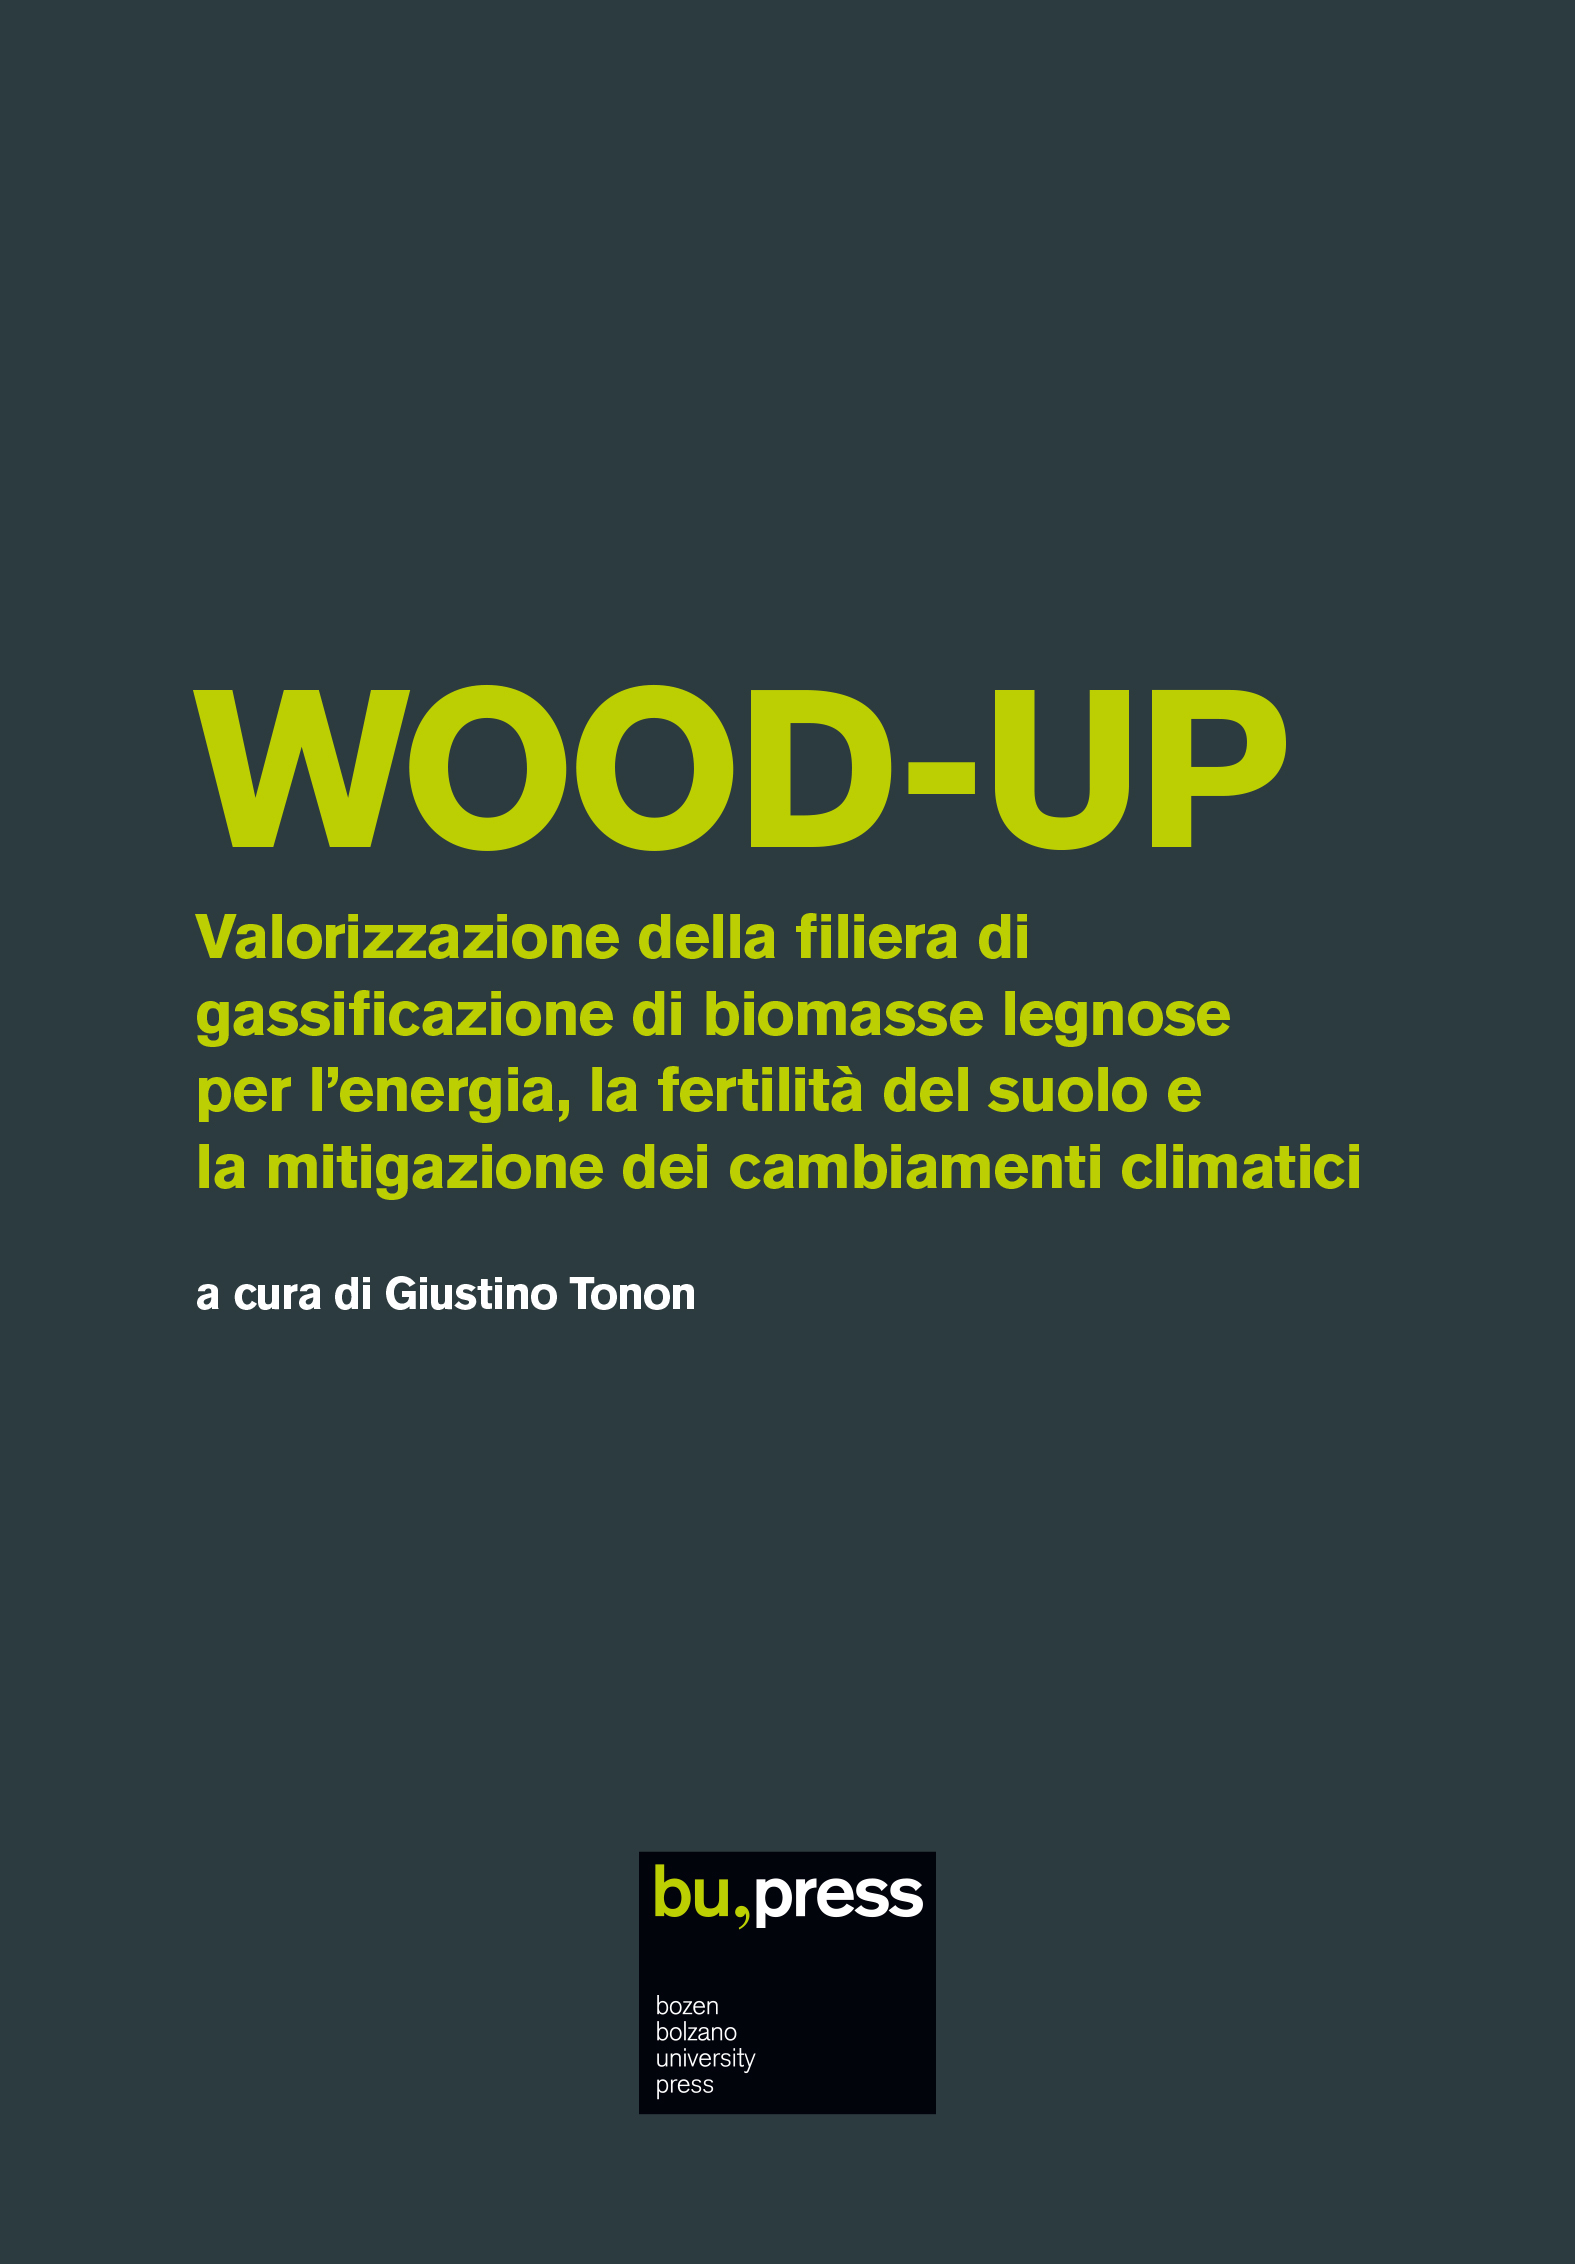 Cover of WOOD-UP – Valorizzazione della filiera di gassificazione di biomasse legnose per l’energia, la fertilità del suolo e la mitigazione dei cambiamenti climatici